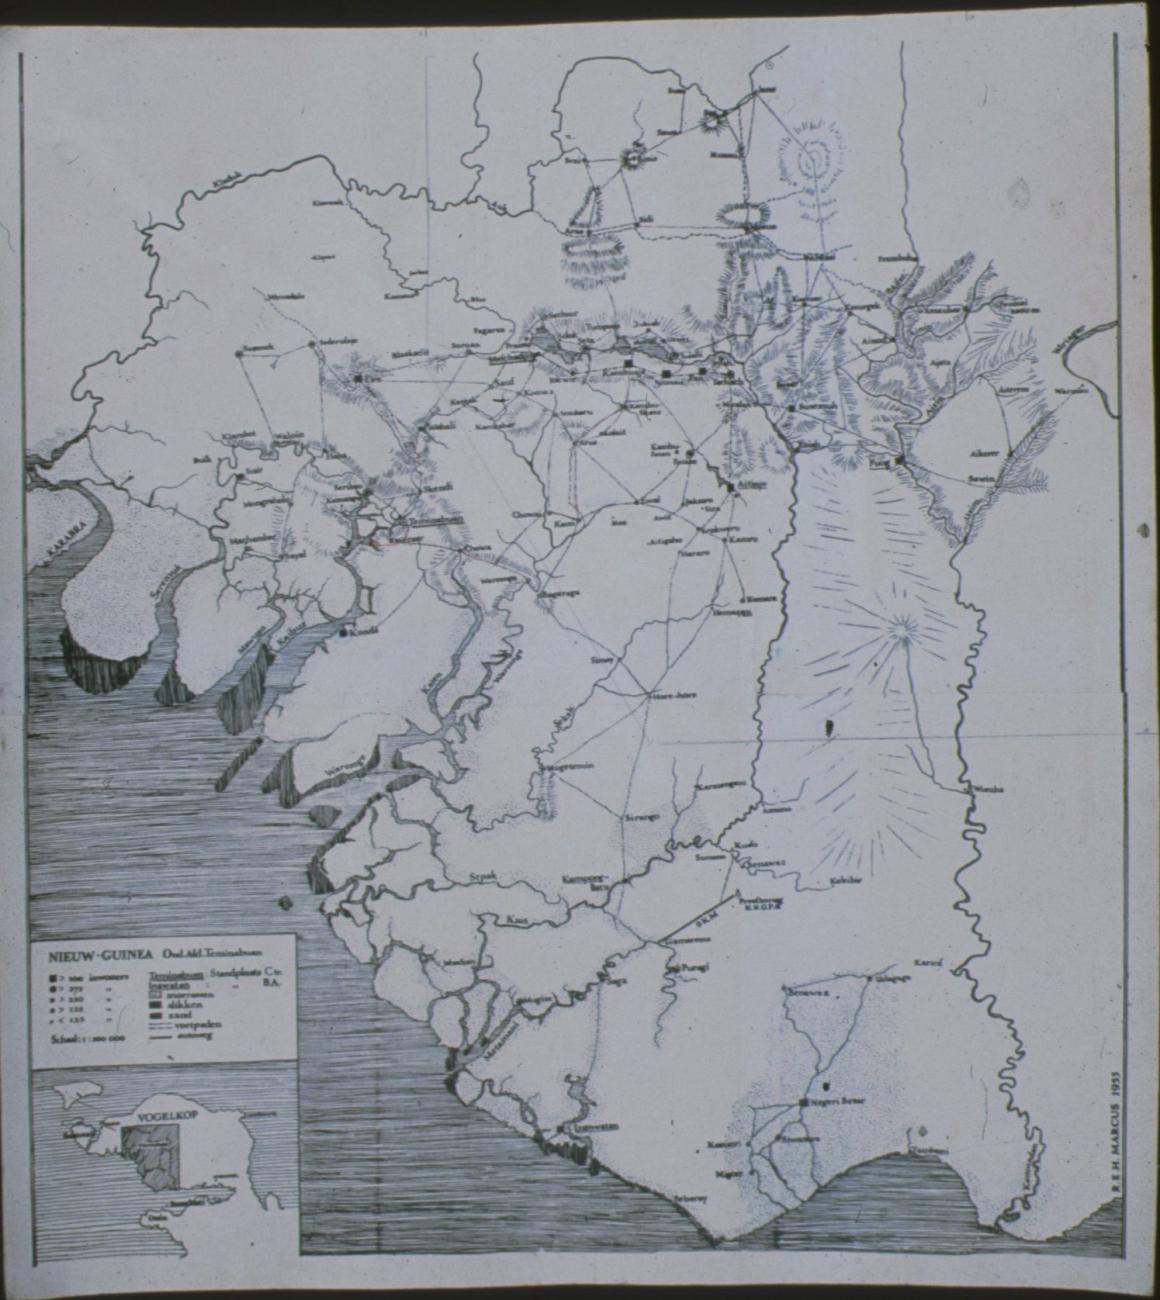 BD/309/206 - 
Kaart van de zuid-westkust van de Vogelkop, onderafdeling Teminabuan
